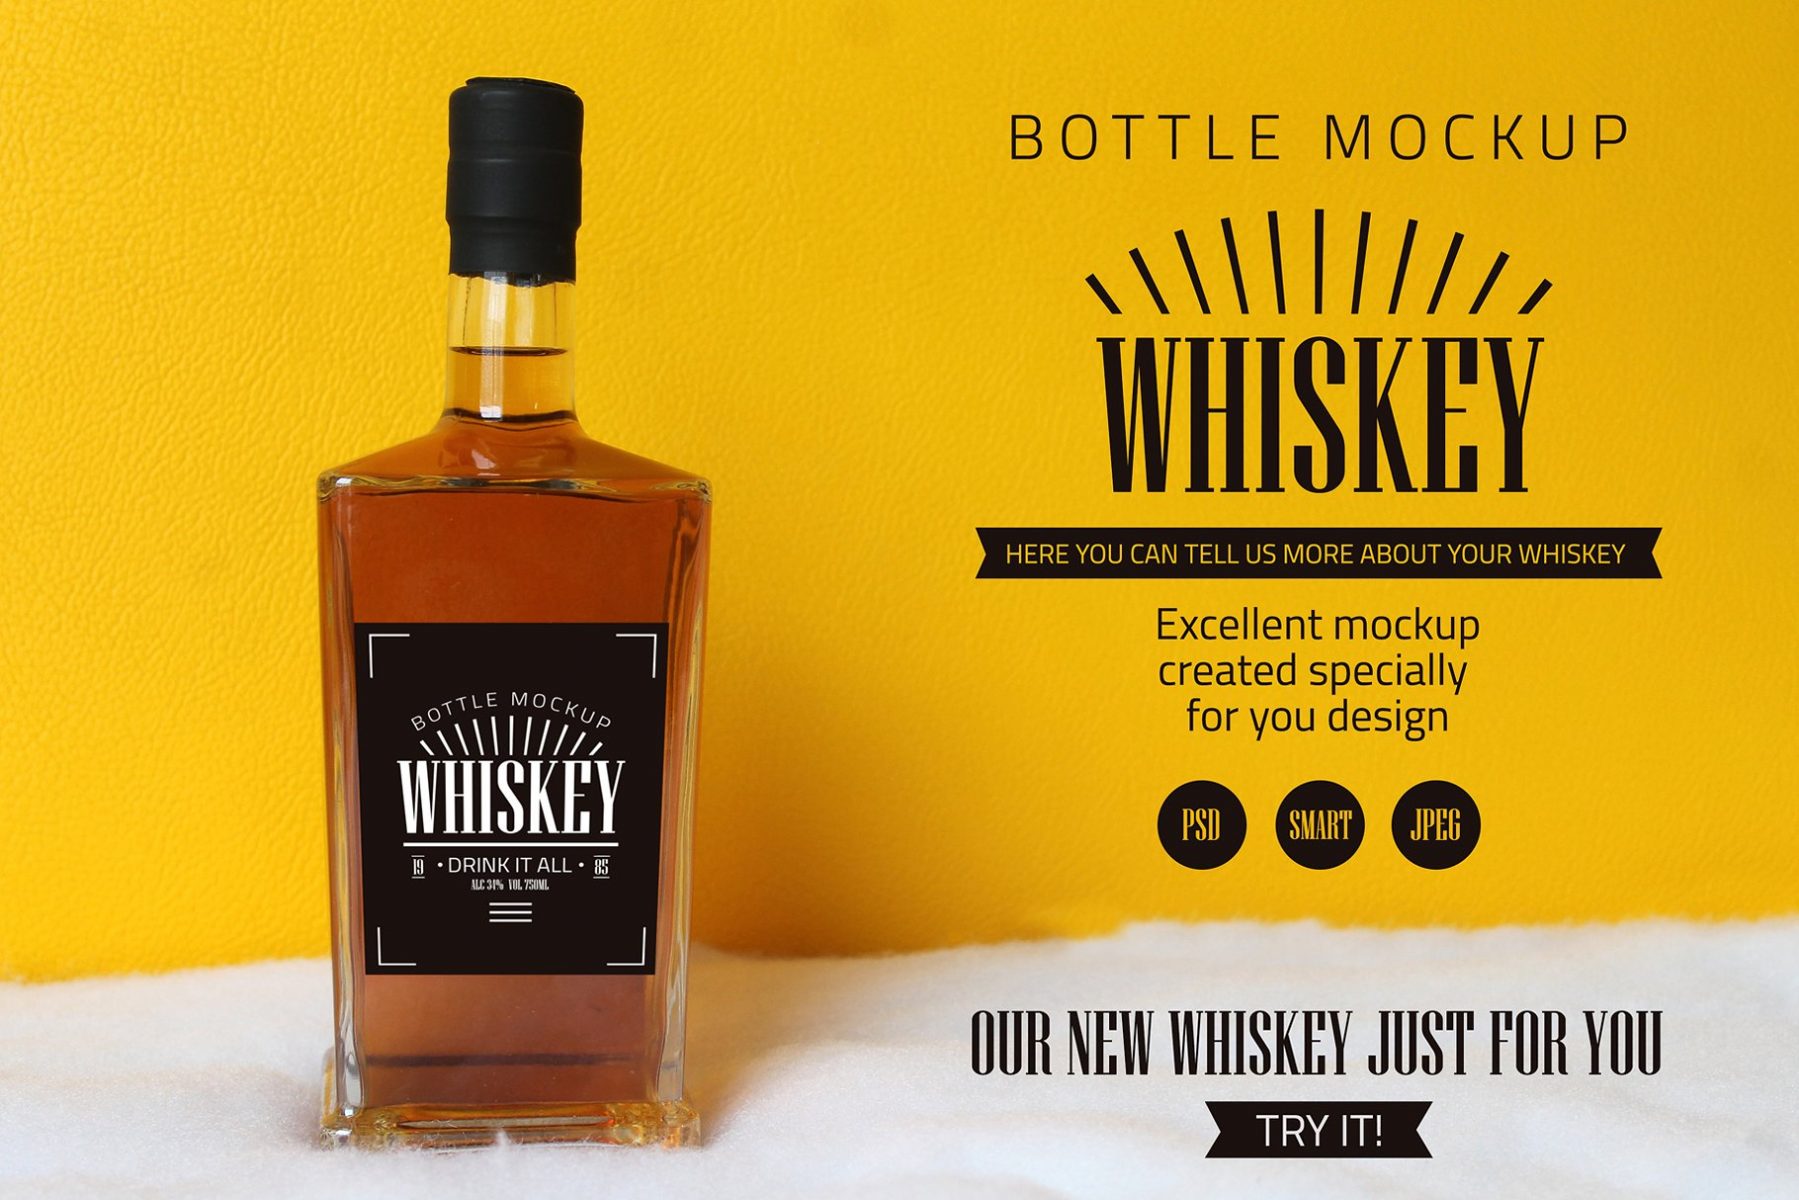 Regular Whisky Bottle Mockup